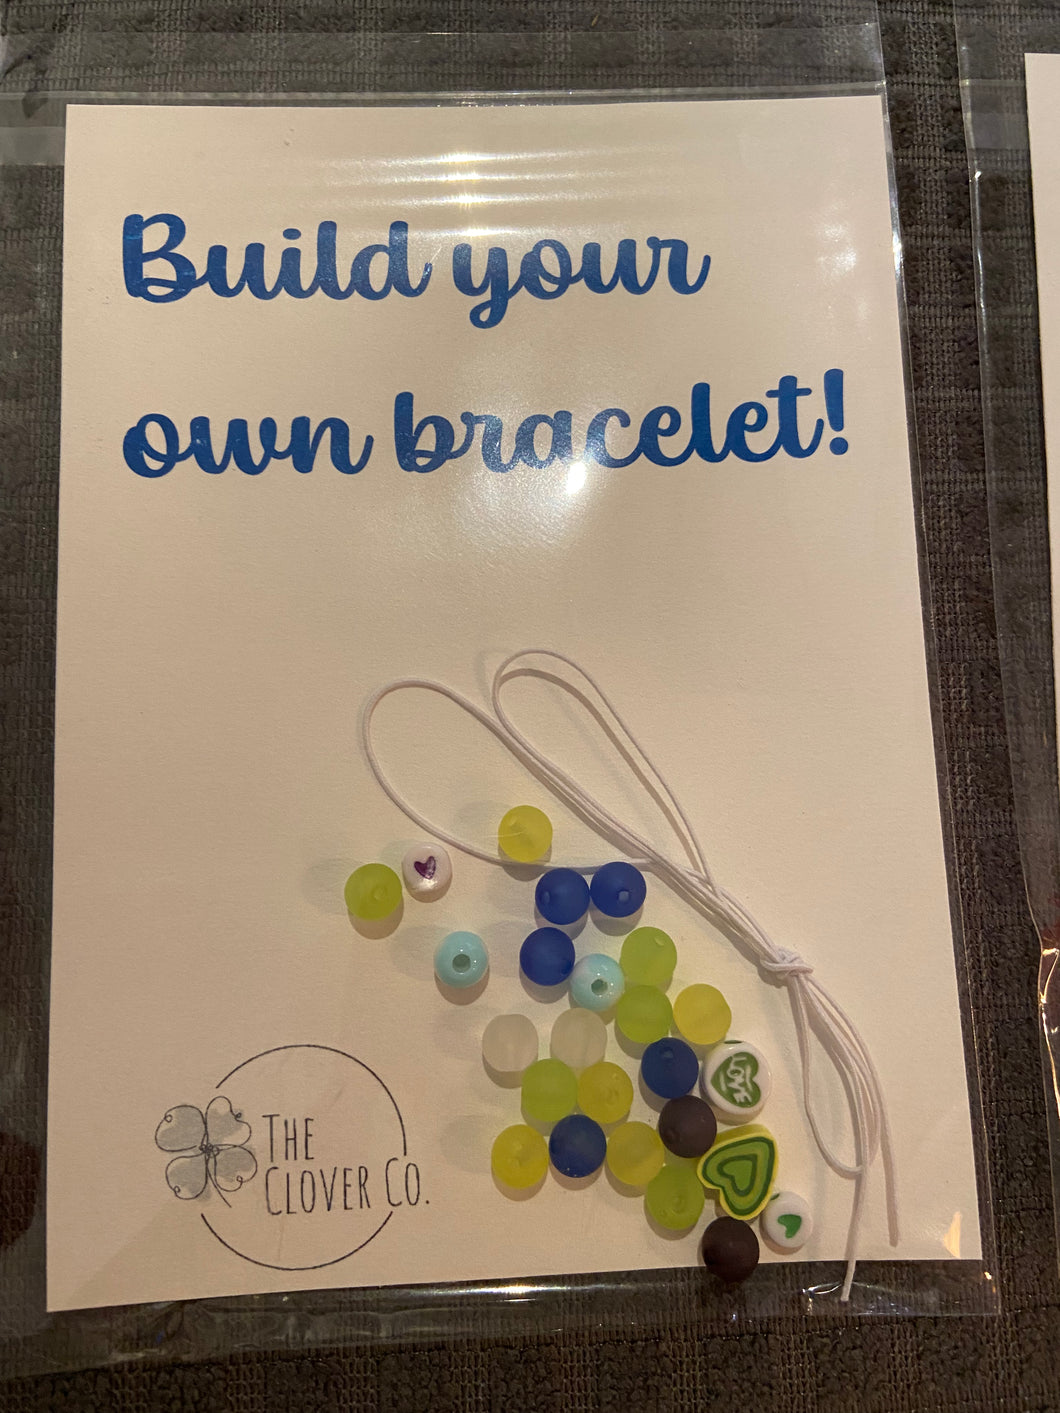 Build your own bracelet